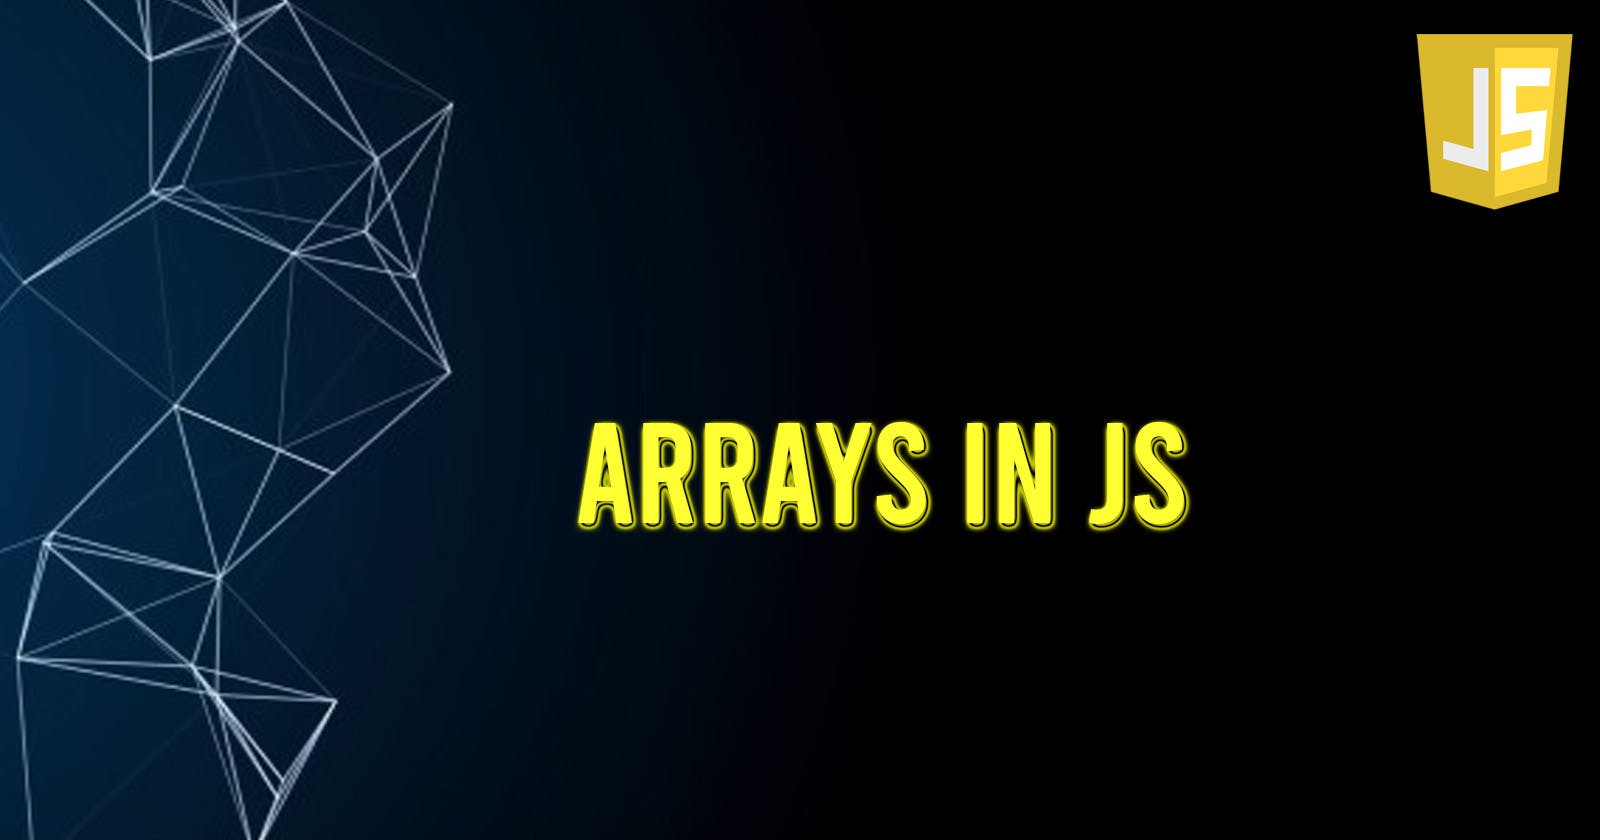 Arrays in JS